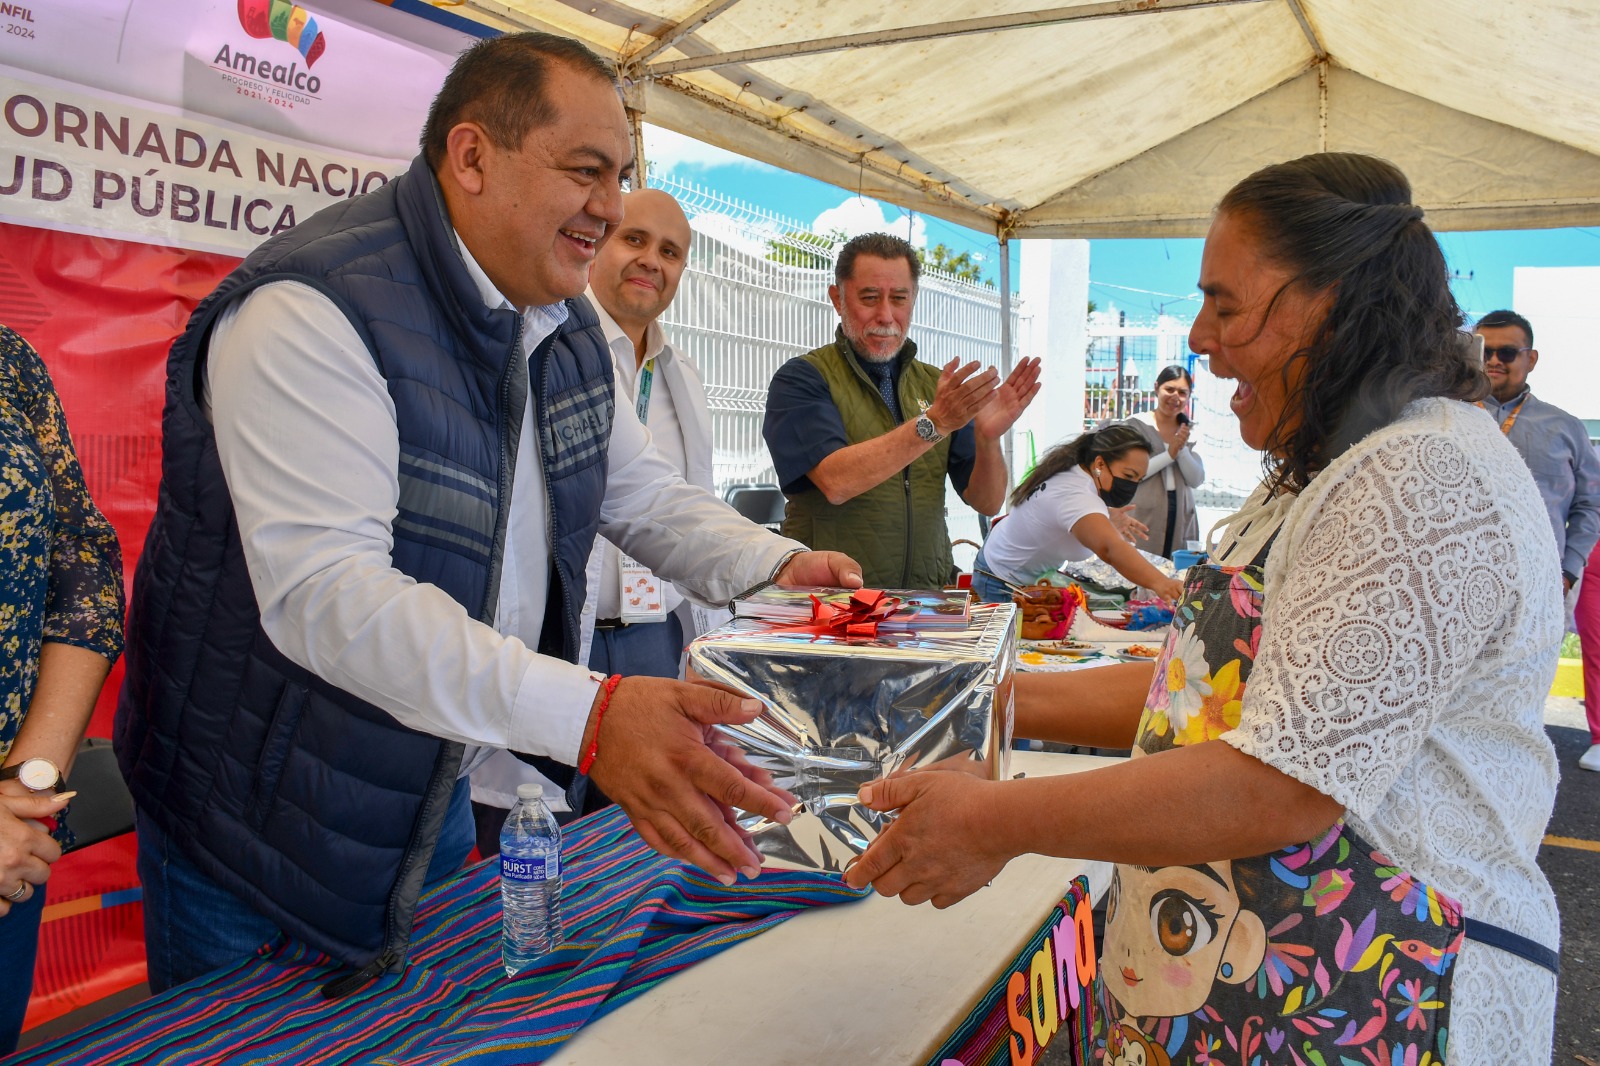 Alcalde René Mejía inaugura la Primera Jornada Nacional de Salud Pública en Amealco.